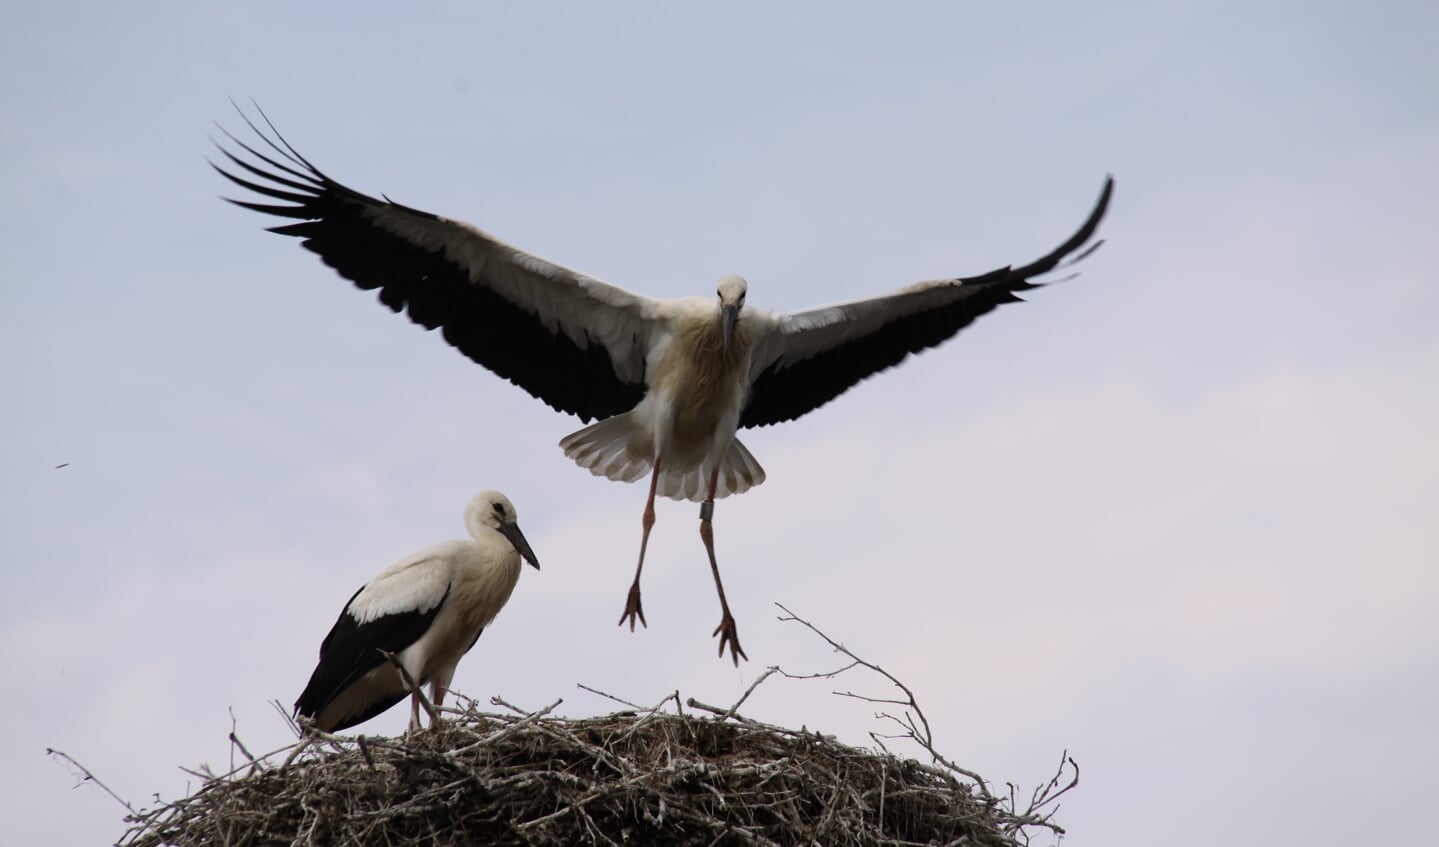 Wekenlang doen de jonge ooievaars vliegoefeningen op het nest voordat ze uitvliegen.